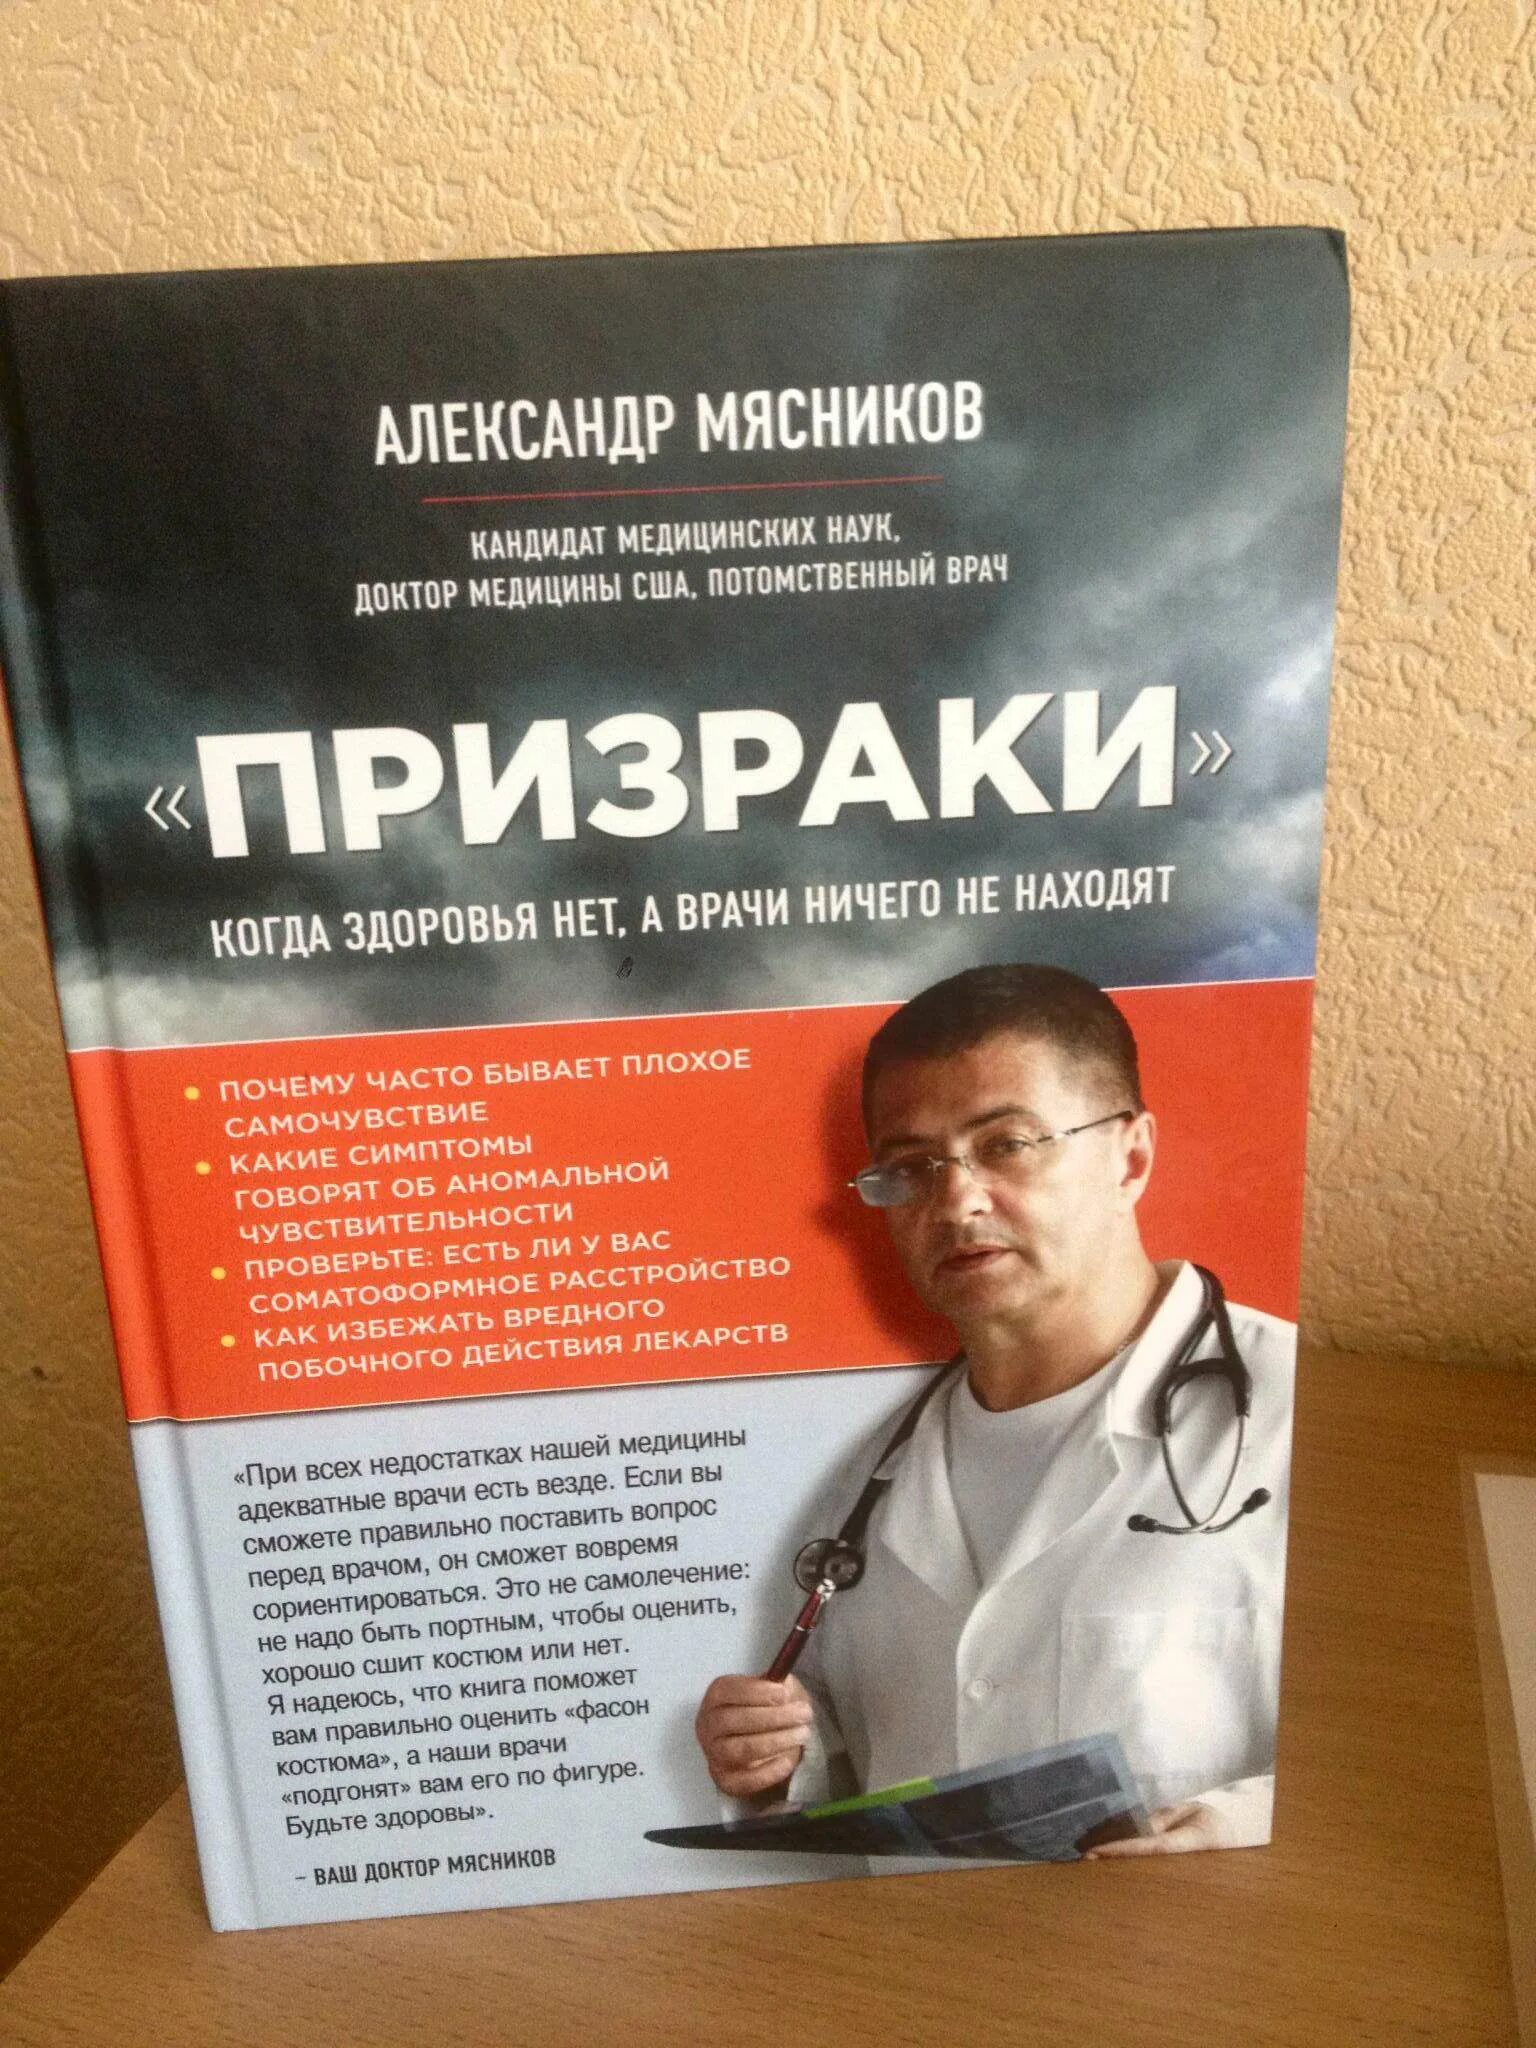 Доктор Мясников книга. Название книг доктора Мясникова. Как называется книга доктора Мясникова.